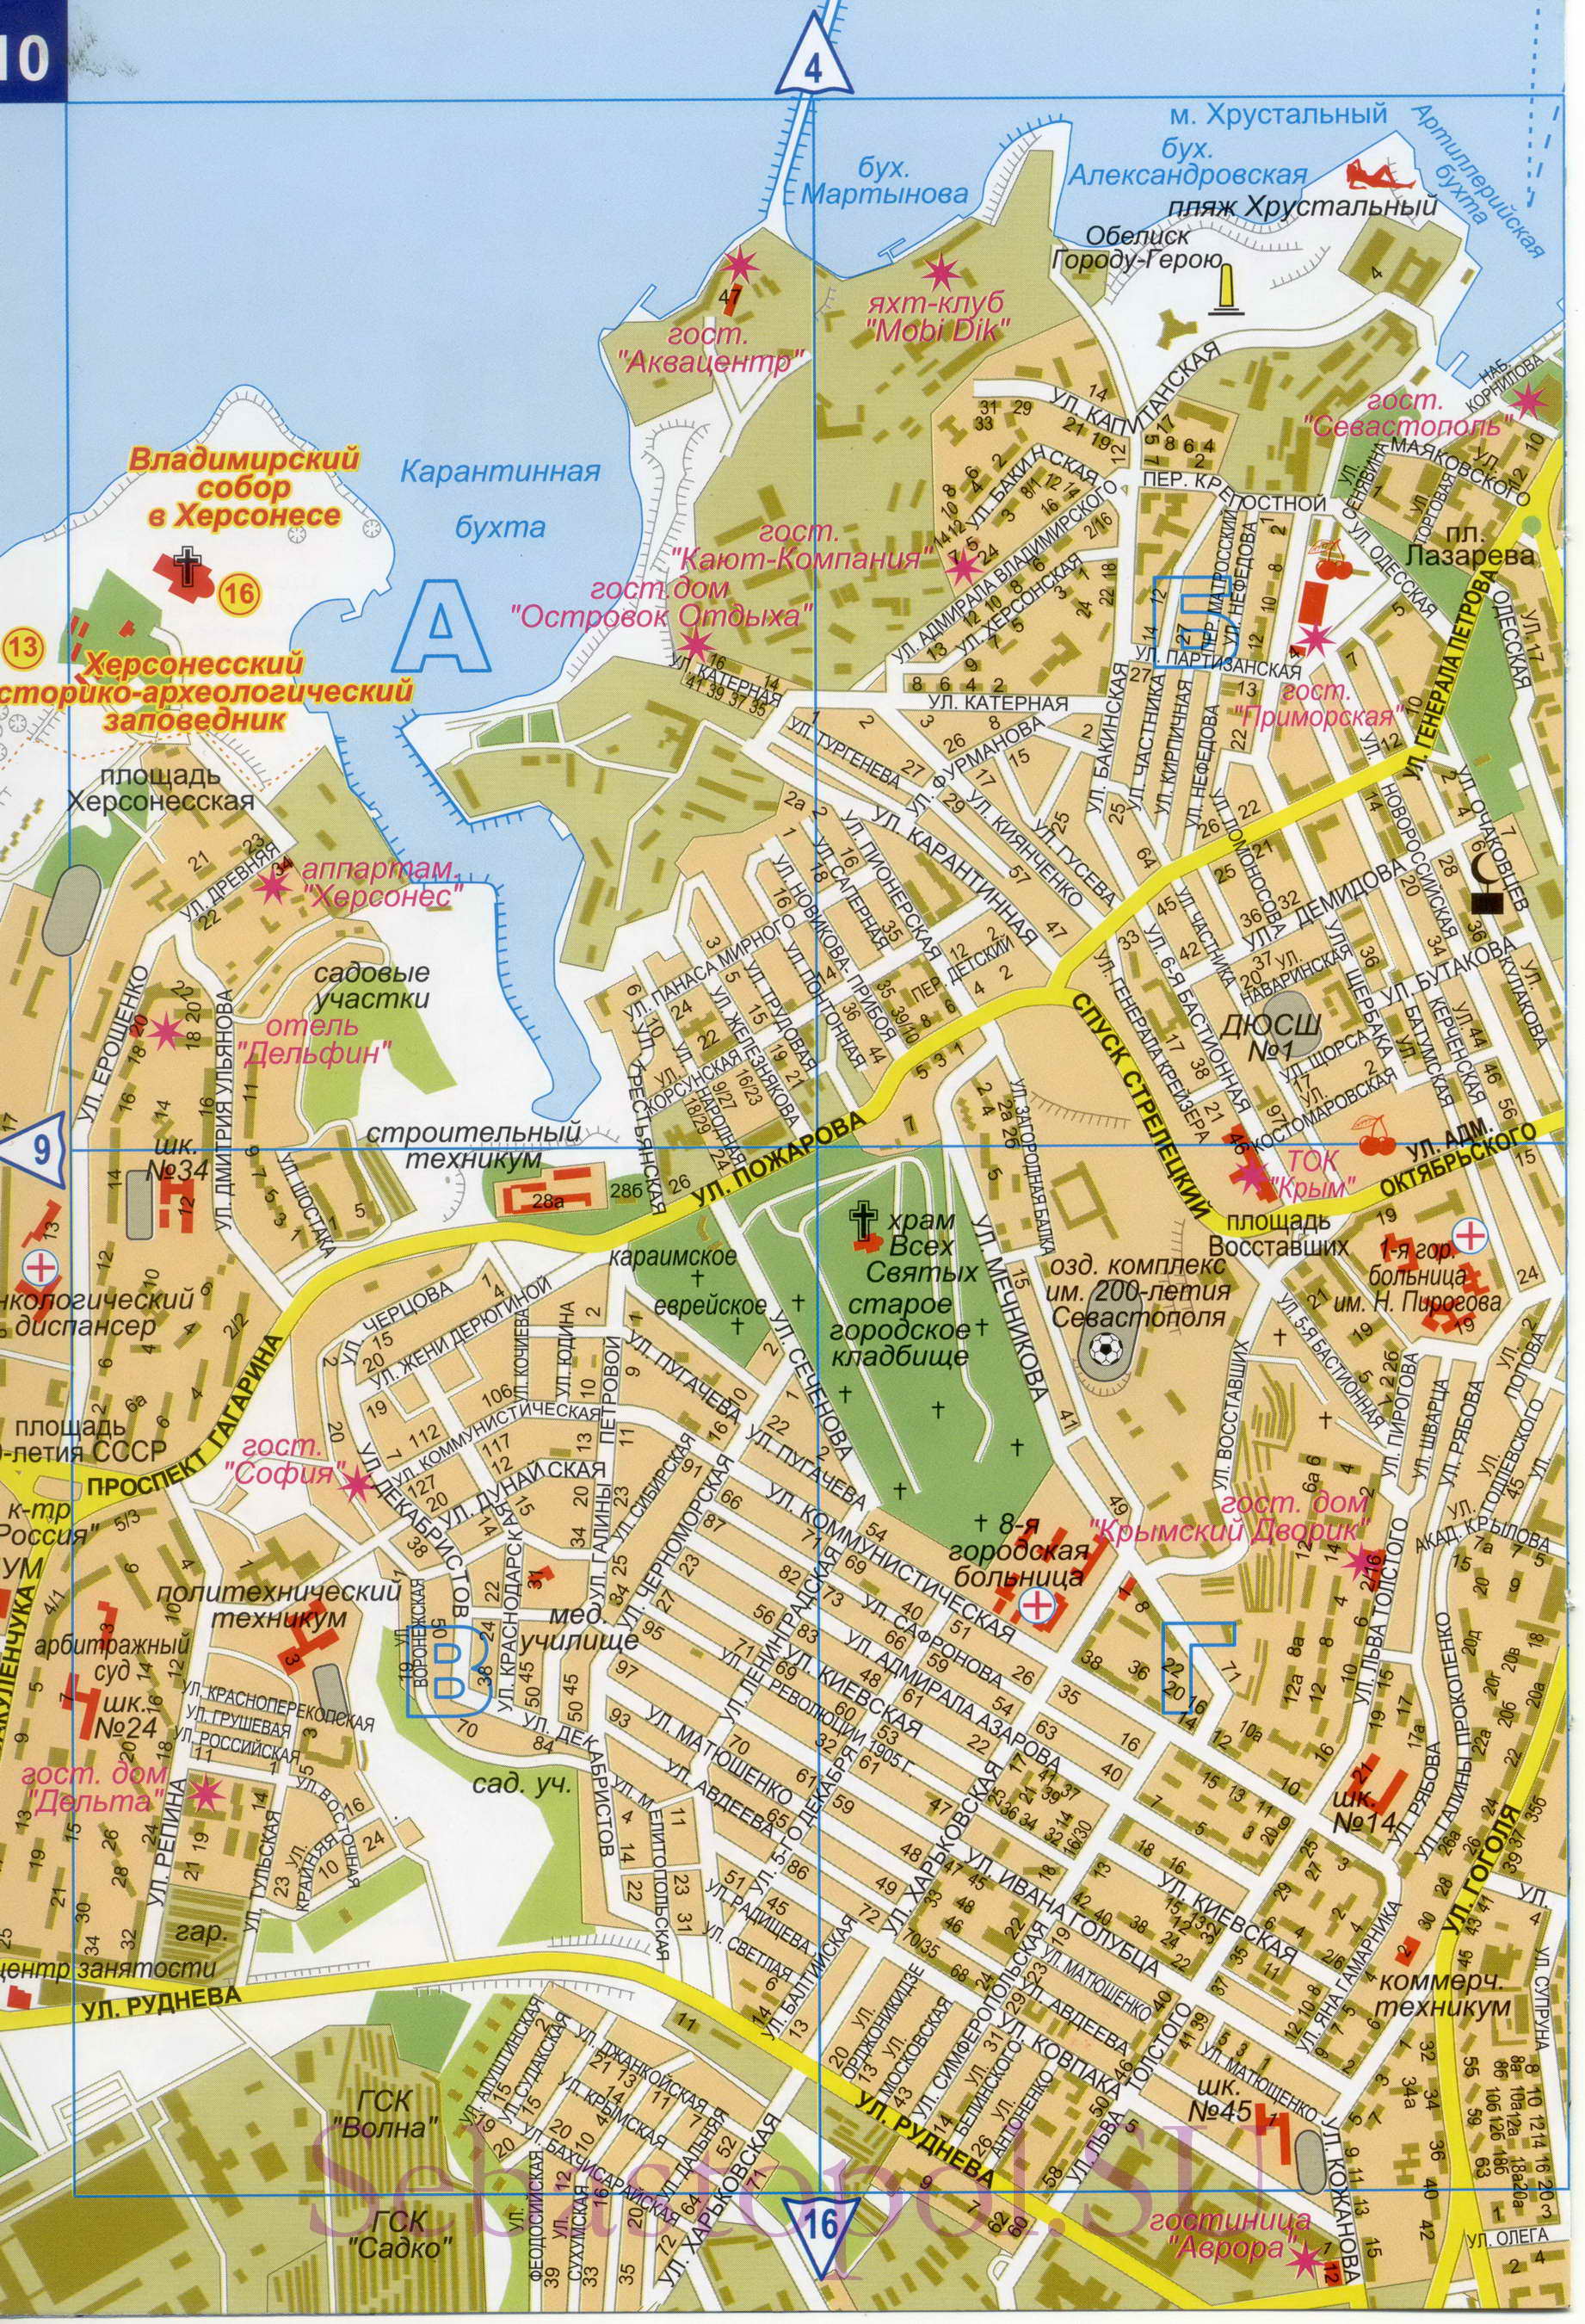 Карта Севастополя. Подробная карта Севастополя с номерами домов. Новая карта Севастополя 2011, C1 - 